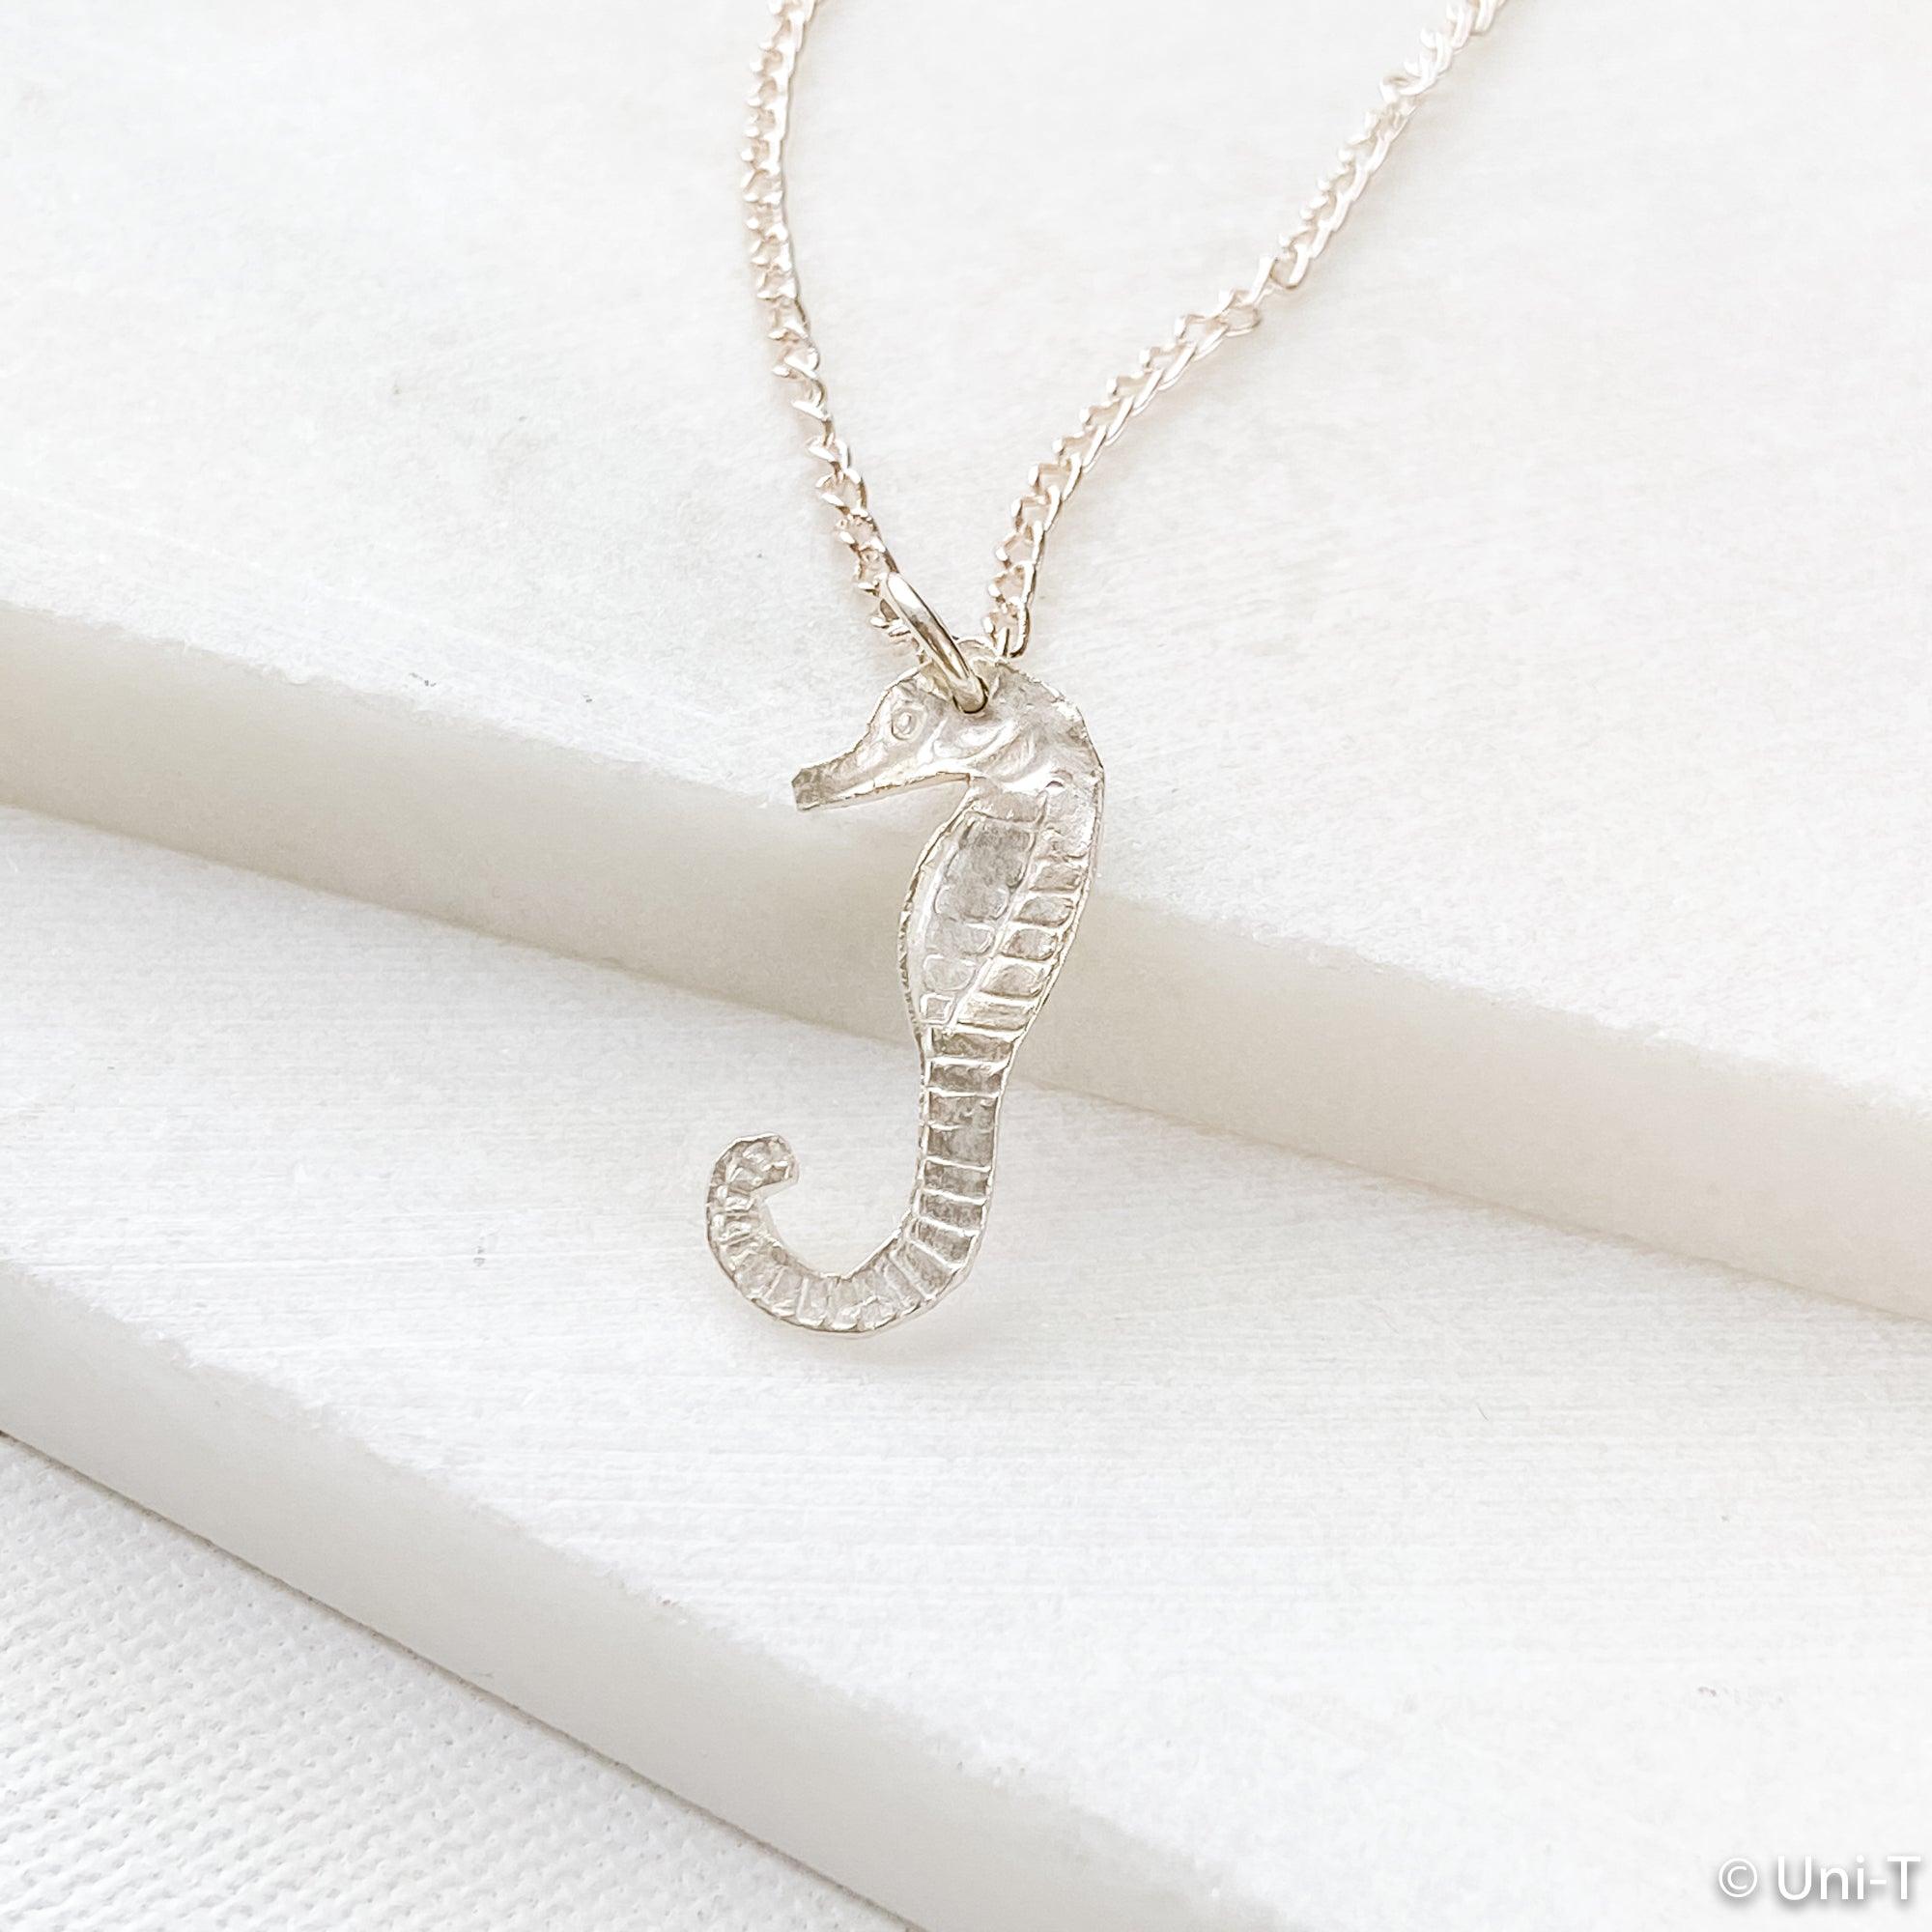 Seahorse Silver Necklace, Precious Metal Clay Necklaces Uni-T Necklace